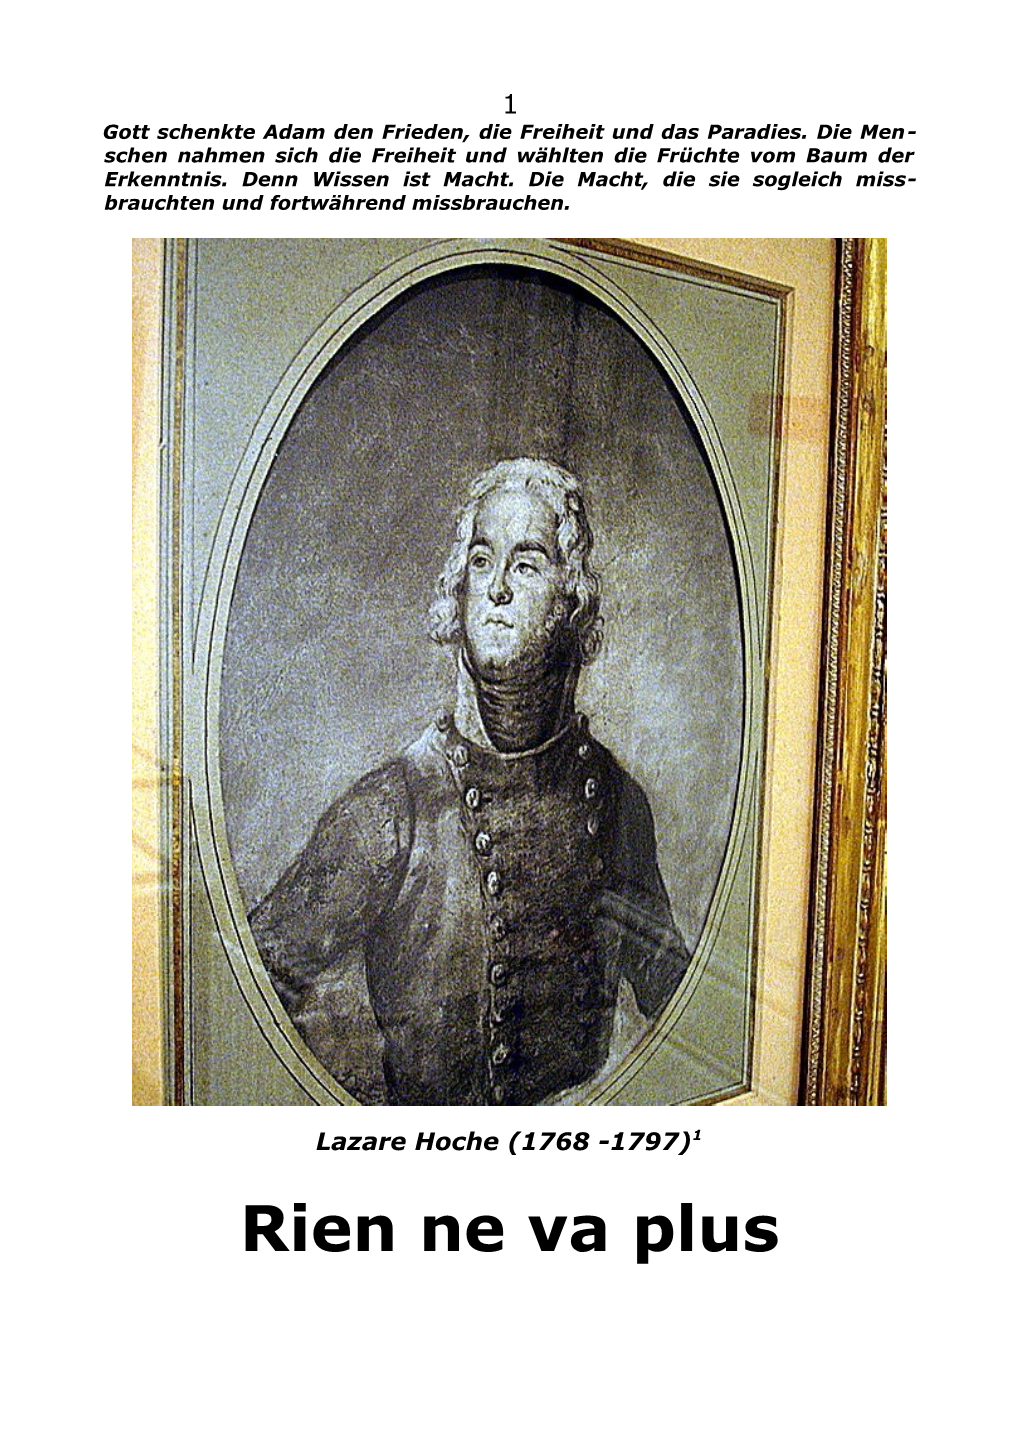 Rien Ne Va Plus 2 Dieser Vierte Band Über Das Leben Des Generals Lazare Hoche (1768-97) Befasst Sich Mit Den Beiden Jahren 1796 Und 1797